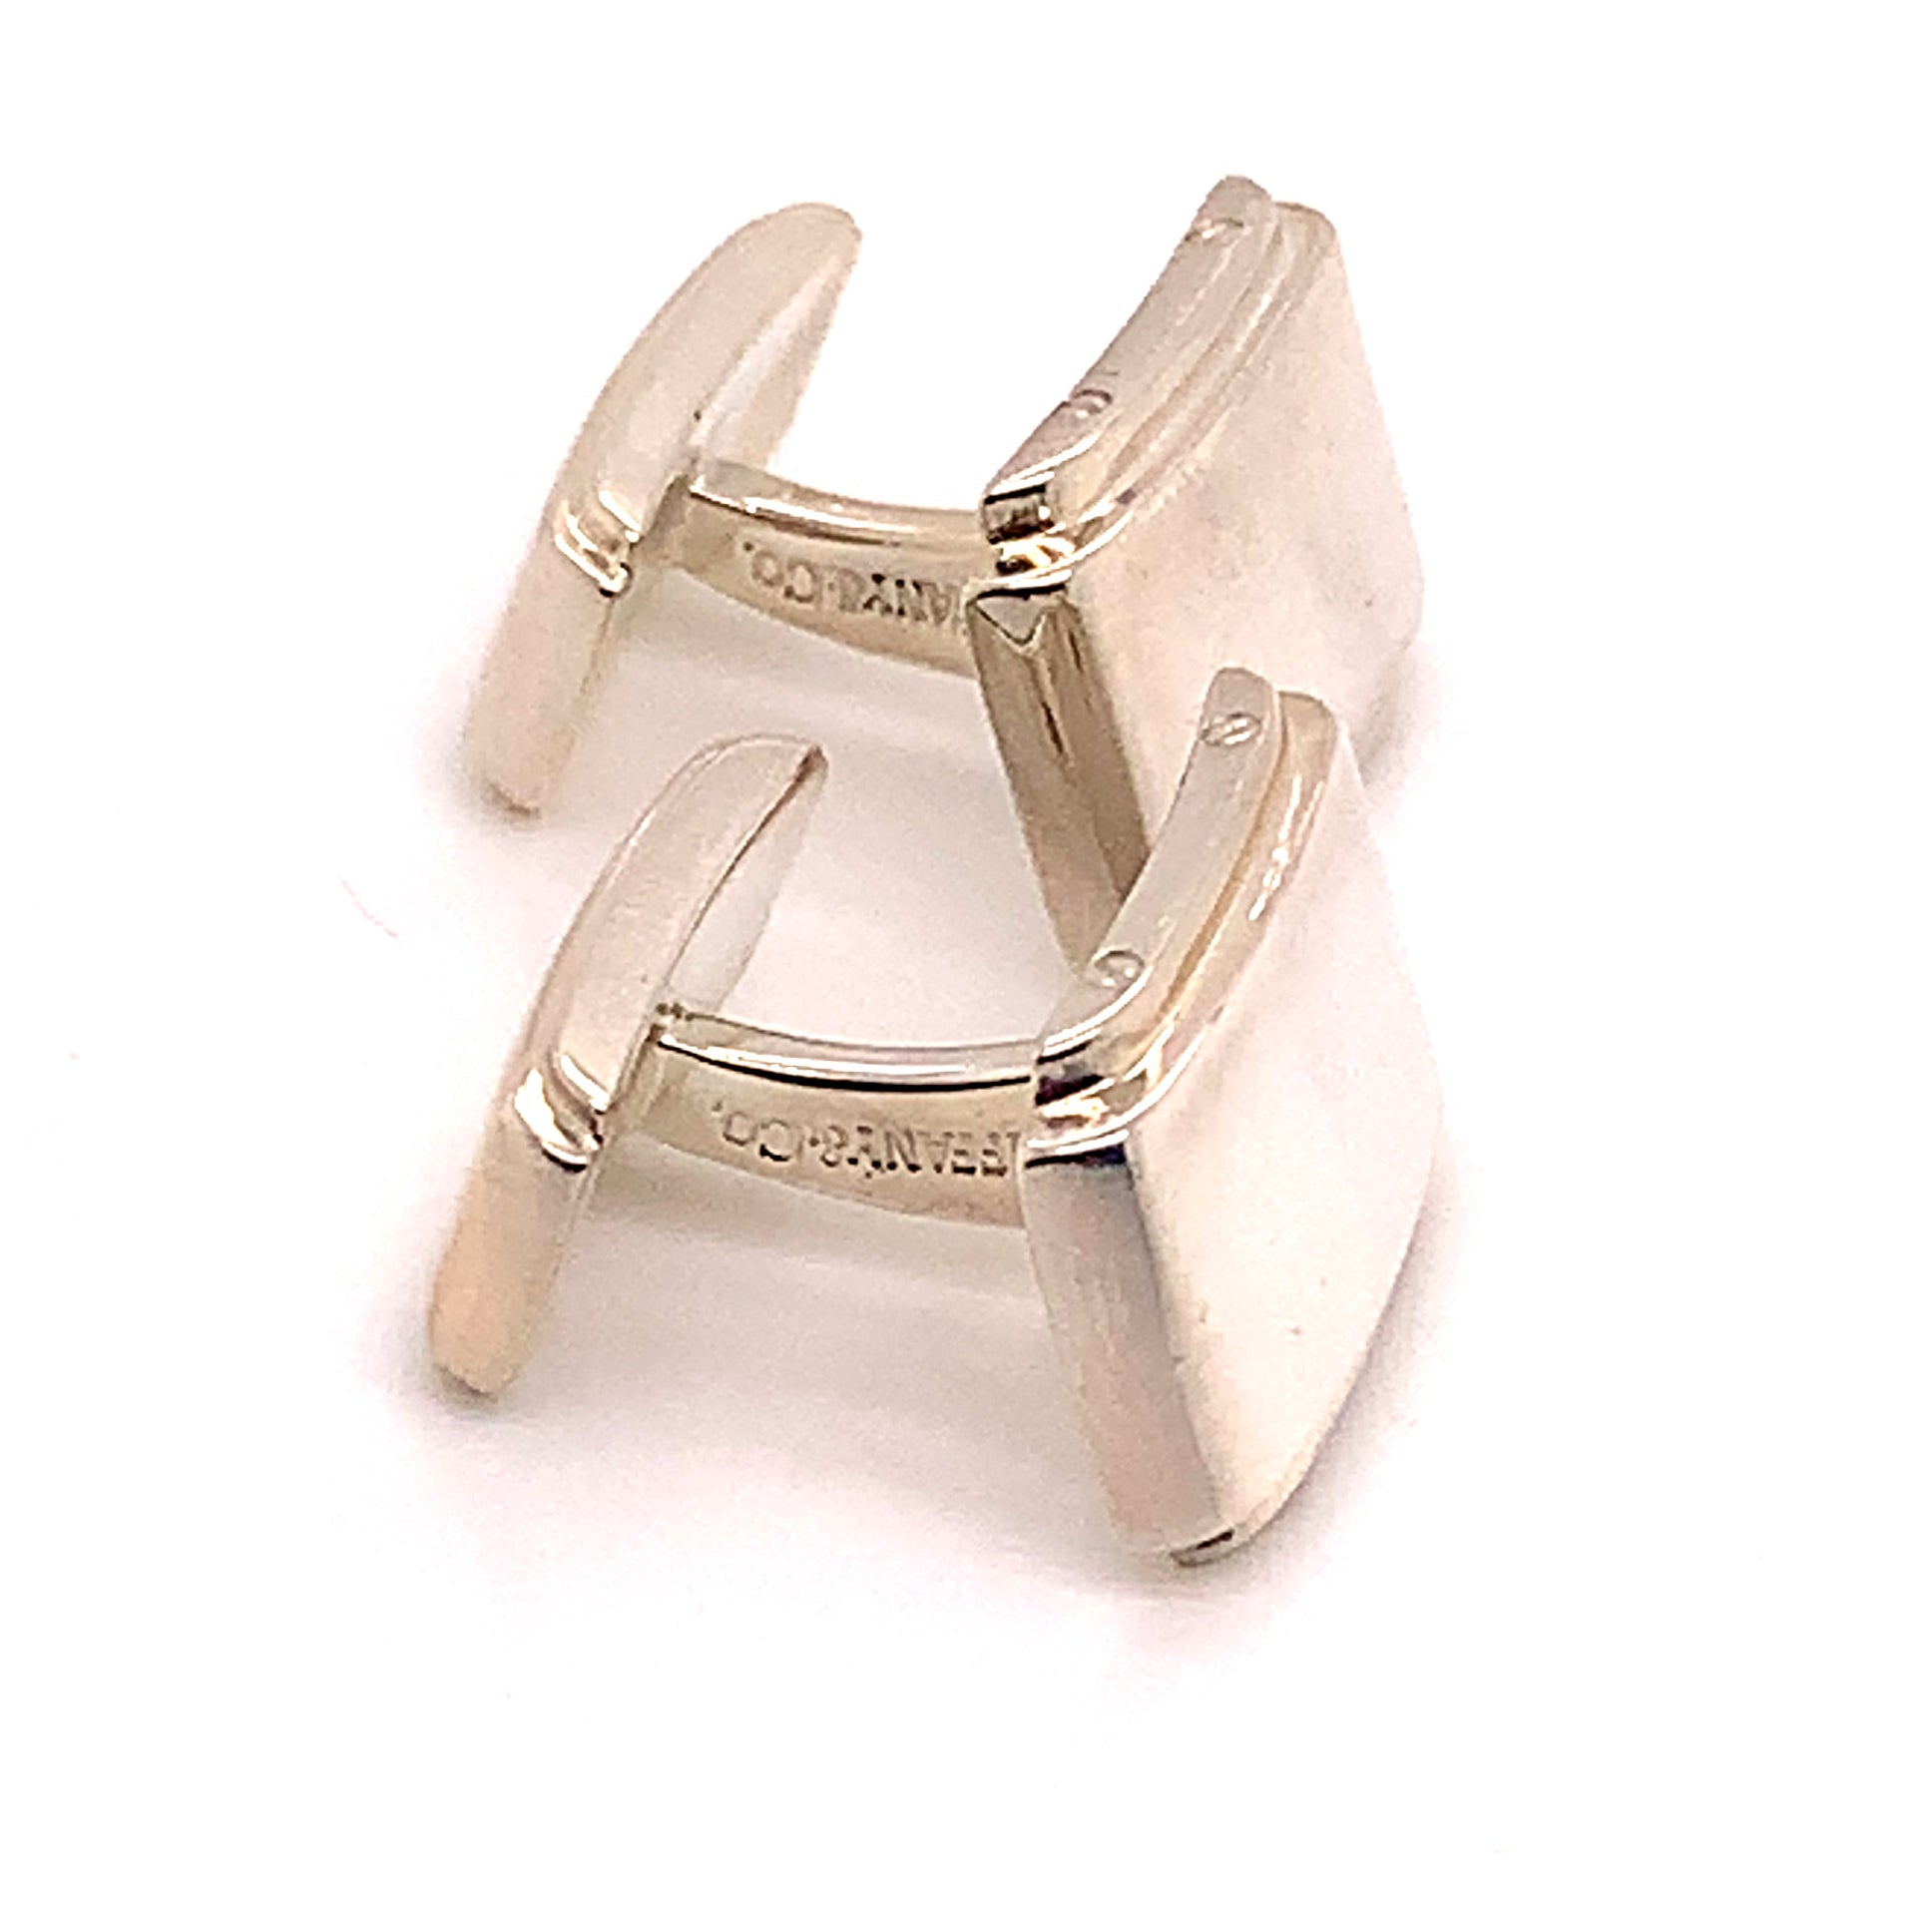 Tiffany & Co Estate Metropolis Cufflinks Sterling Silver TIF267 - Certified Estate Jewelry